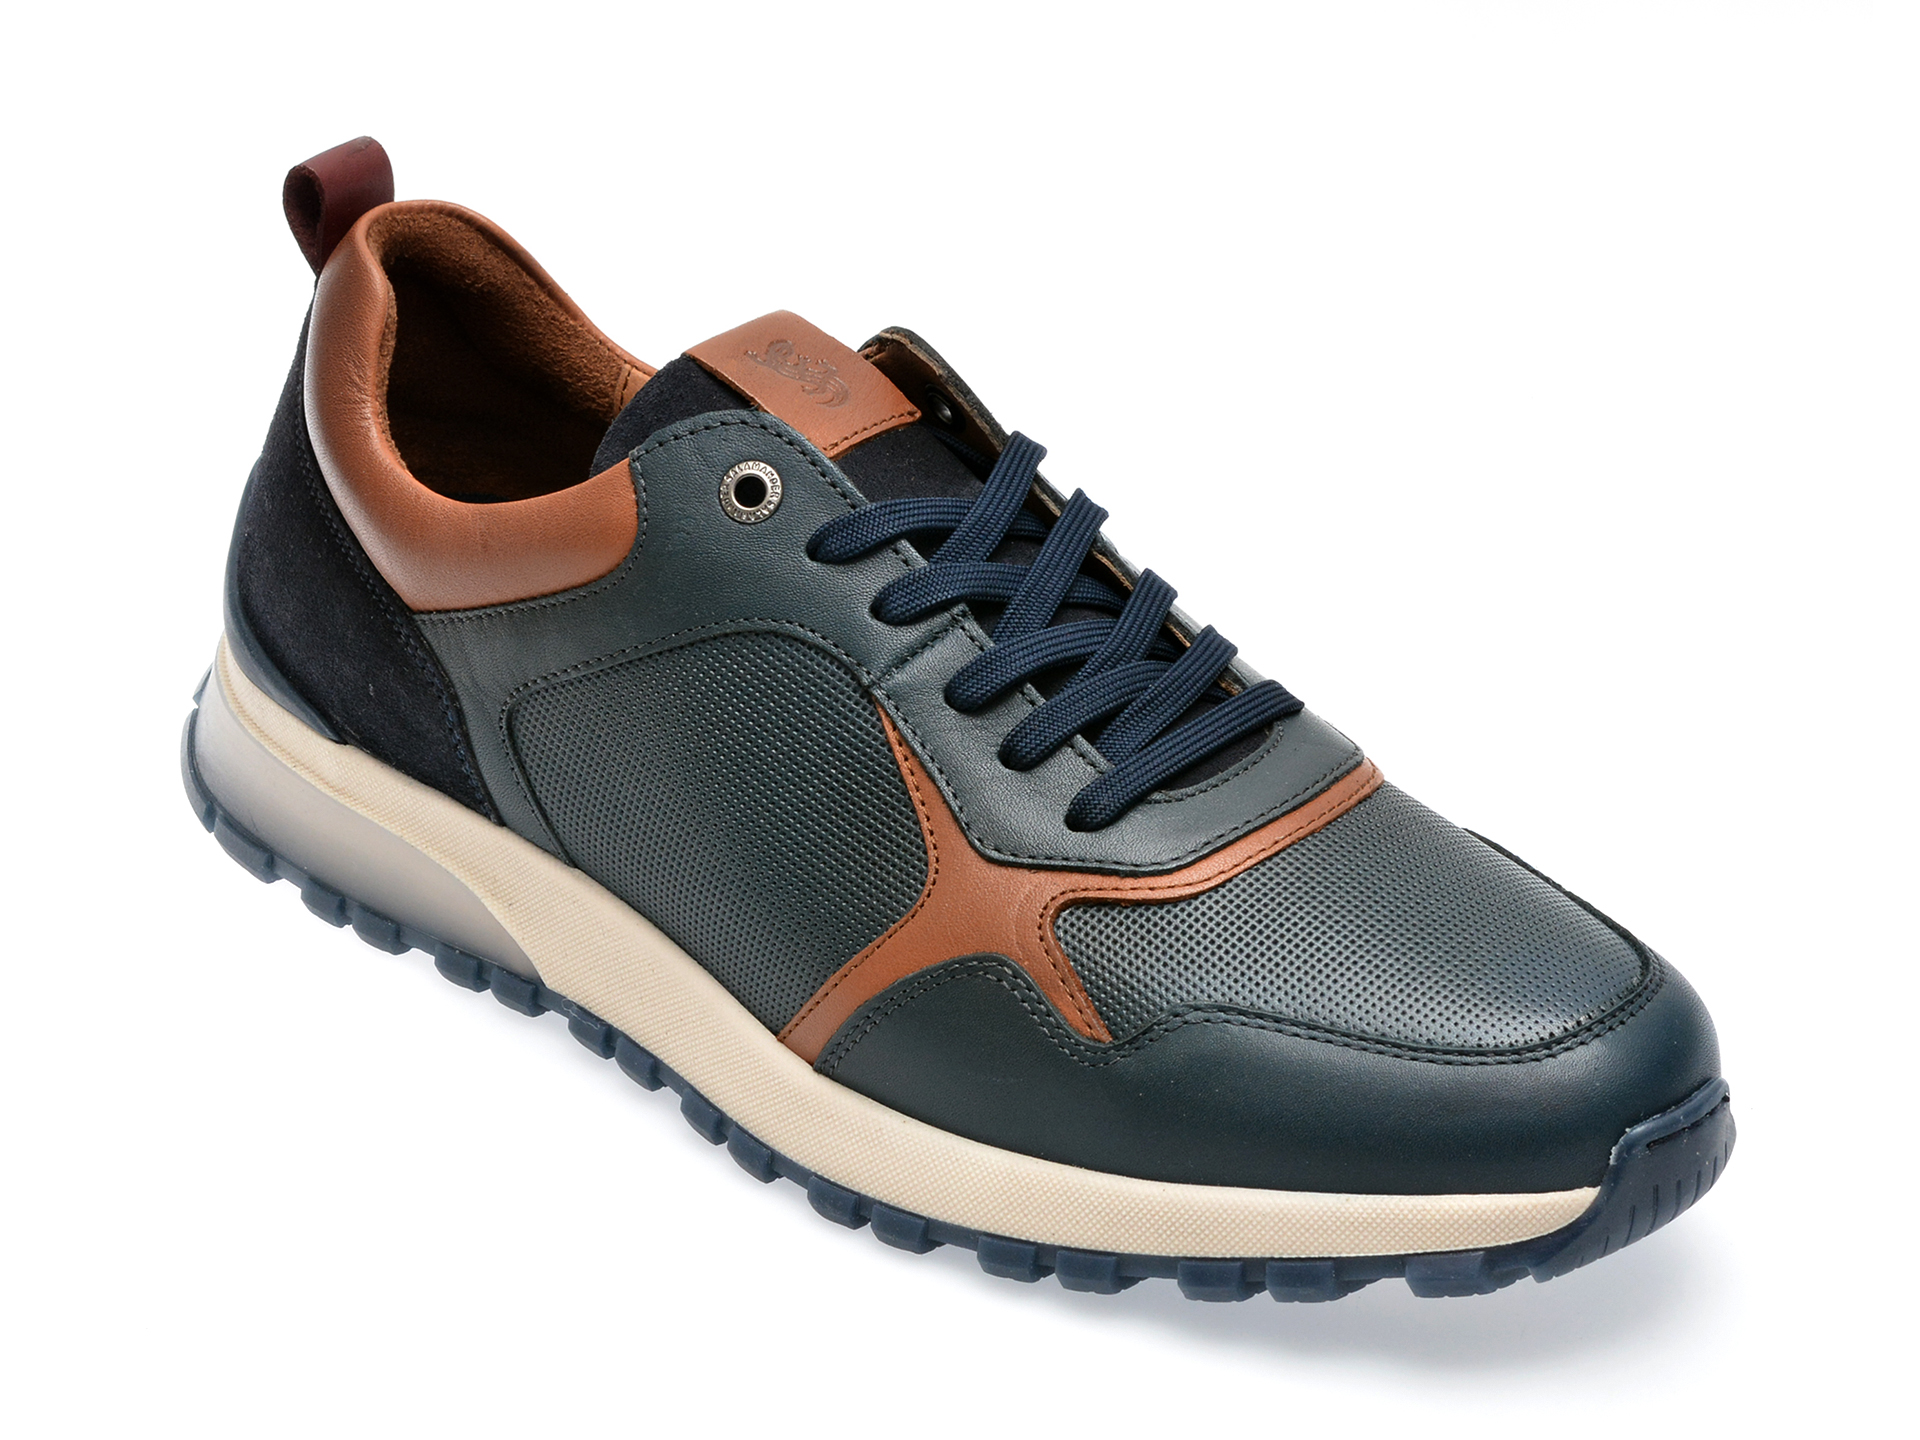 Pantofi SALAMANDER bleumarin, 48803, din piele naturala